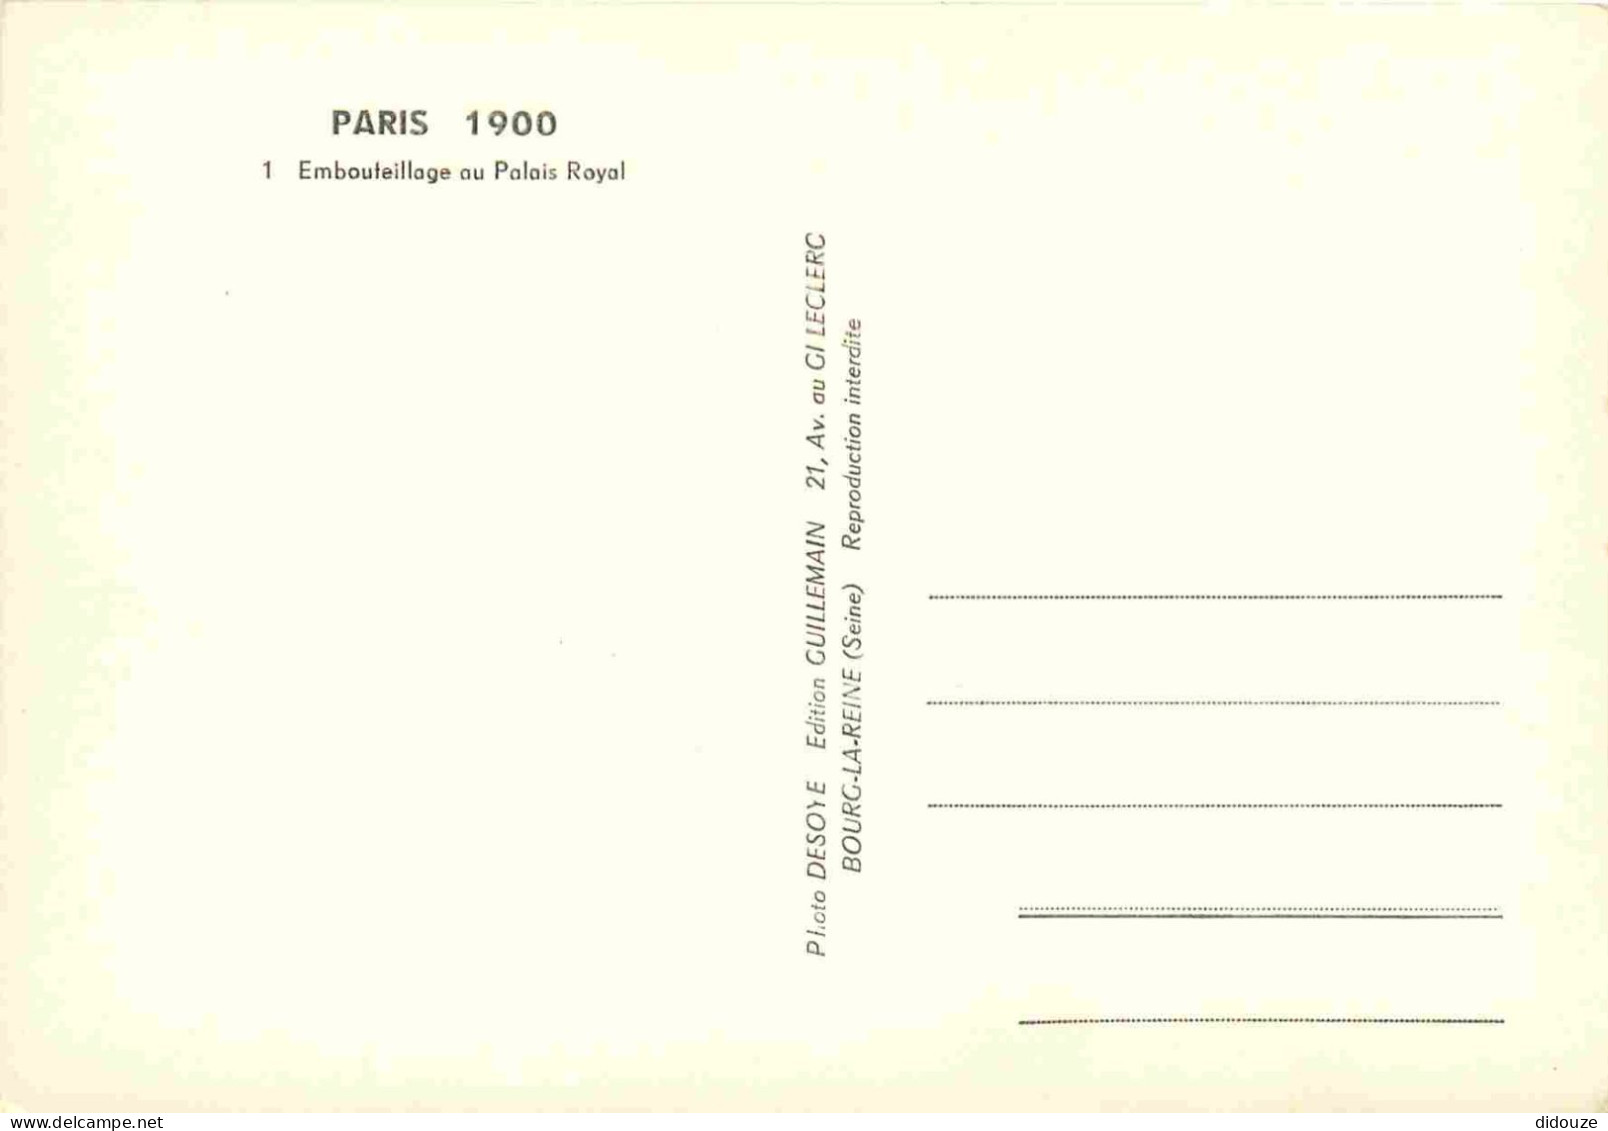 Reproduction CPA - 75 Paris - Embouteillage Au Palais Royal - Automobiles - Omnibus - Paris 1900 - 1 - CPM - Carte Neuve - Unclassified